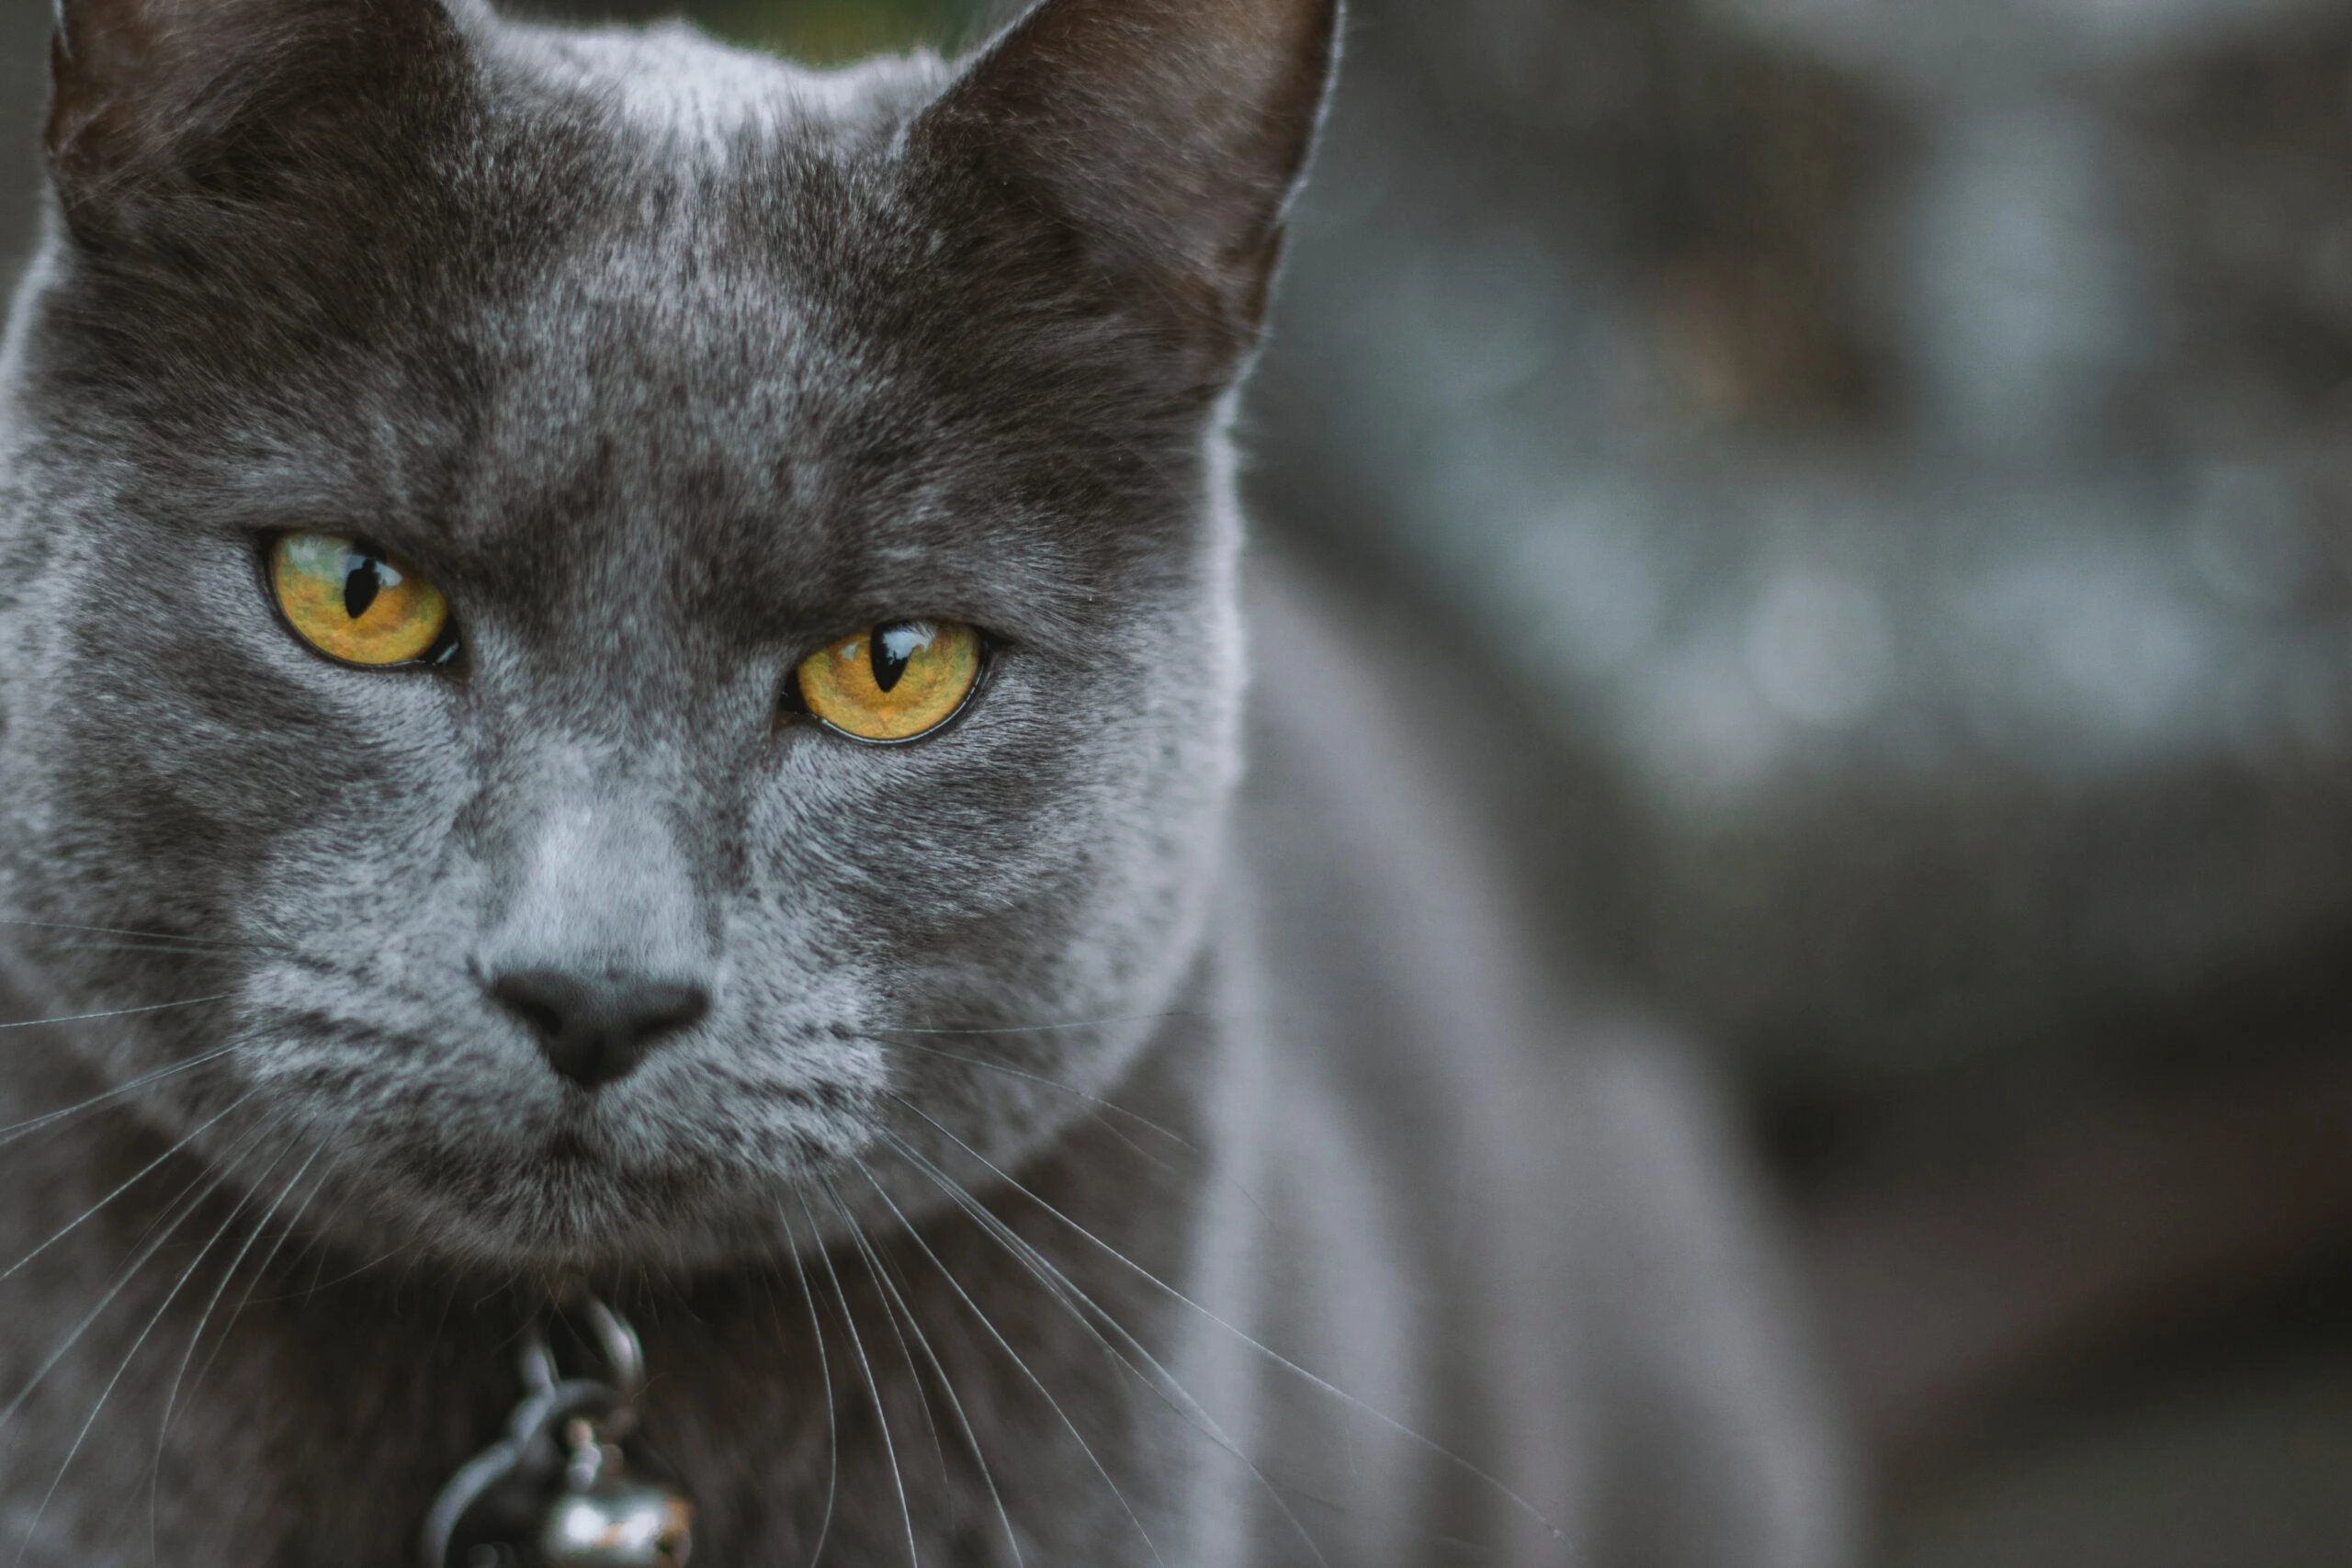 edward-howell-Siberian grey cat up close-unsplash-scaled